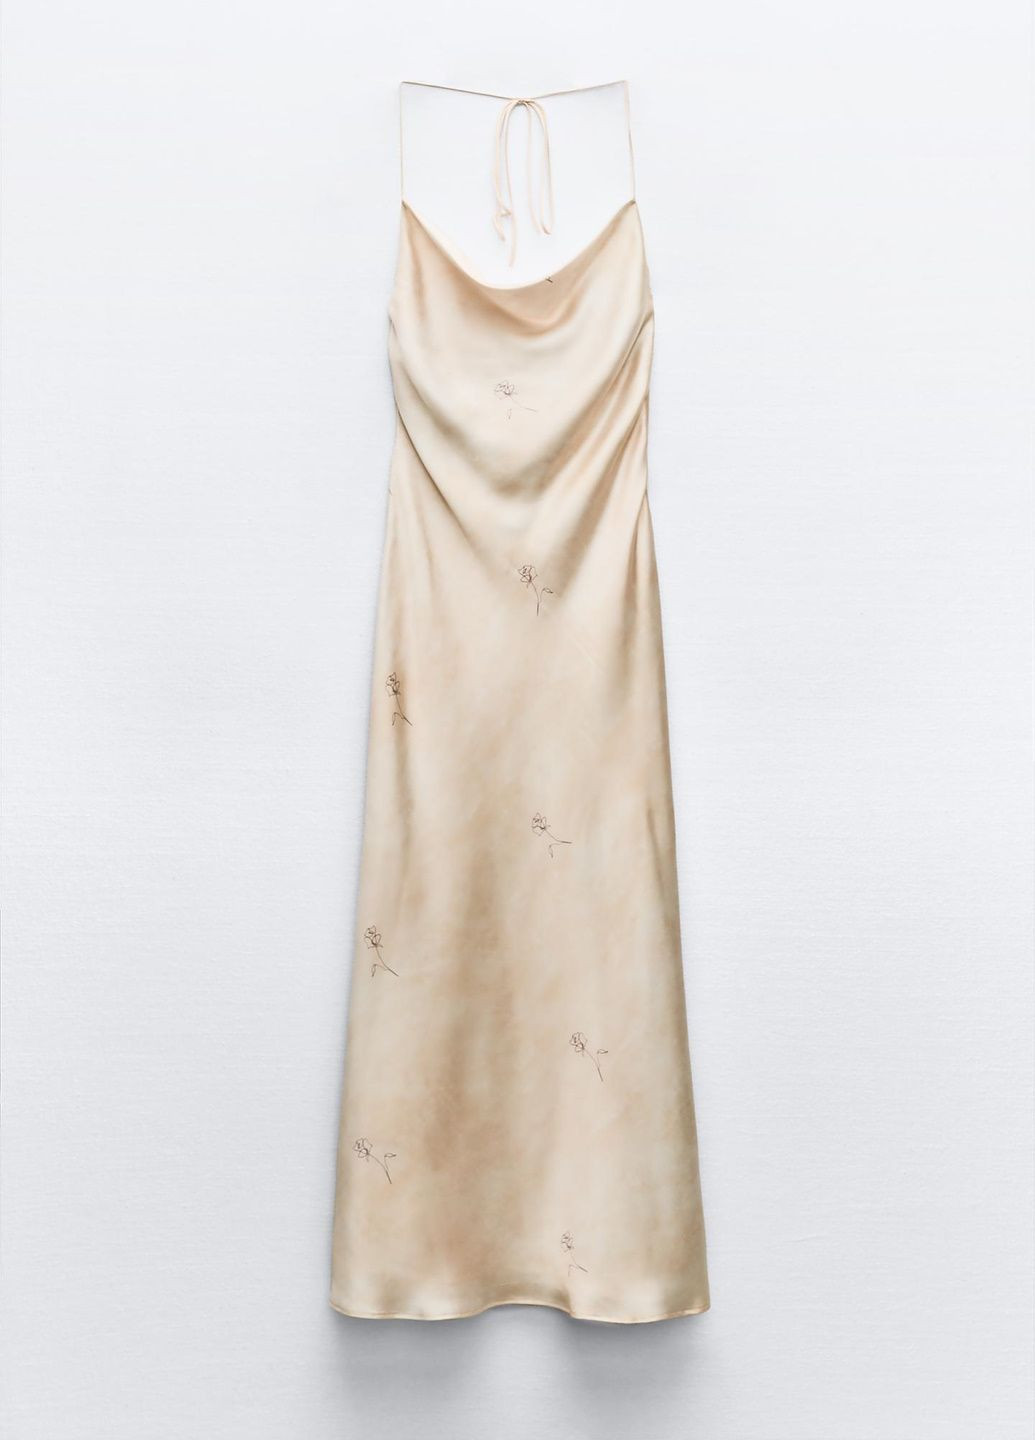 Світло-бежева святковий сукня Zara з квітковим принтом